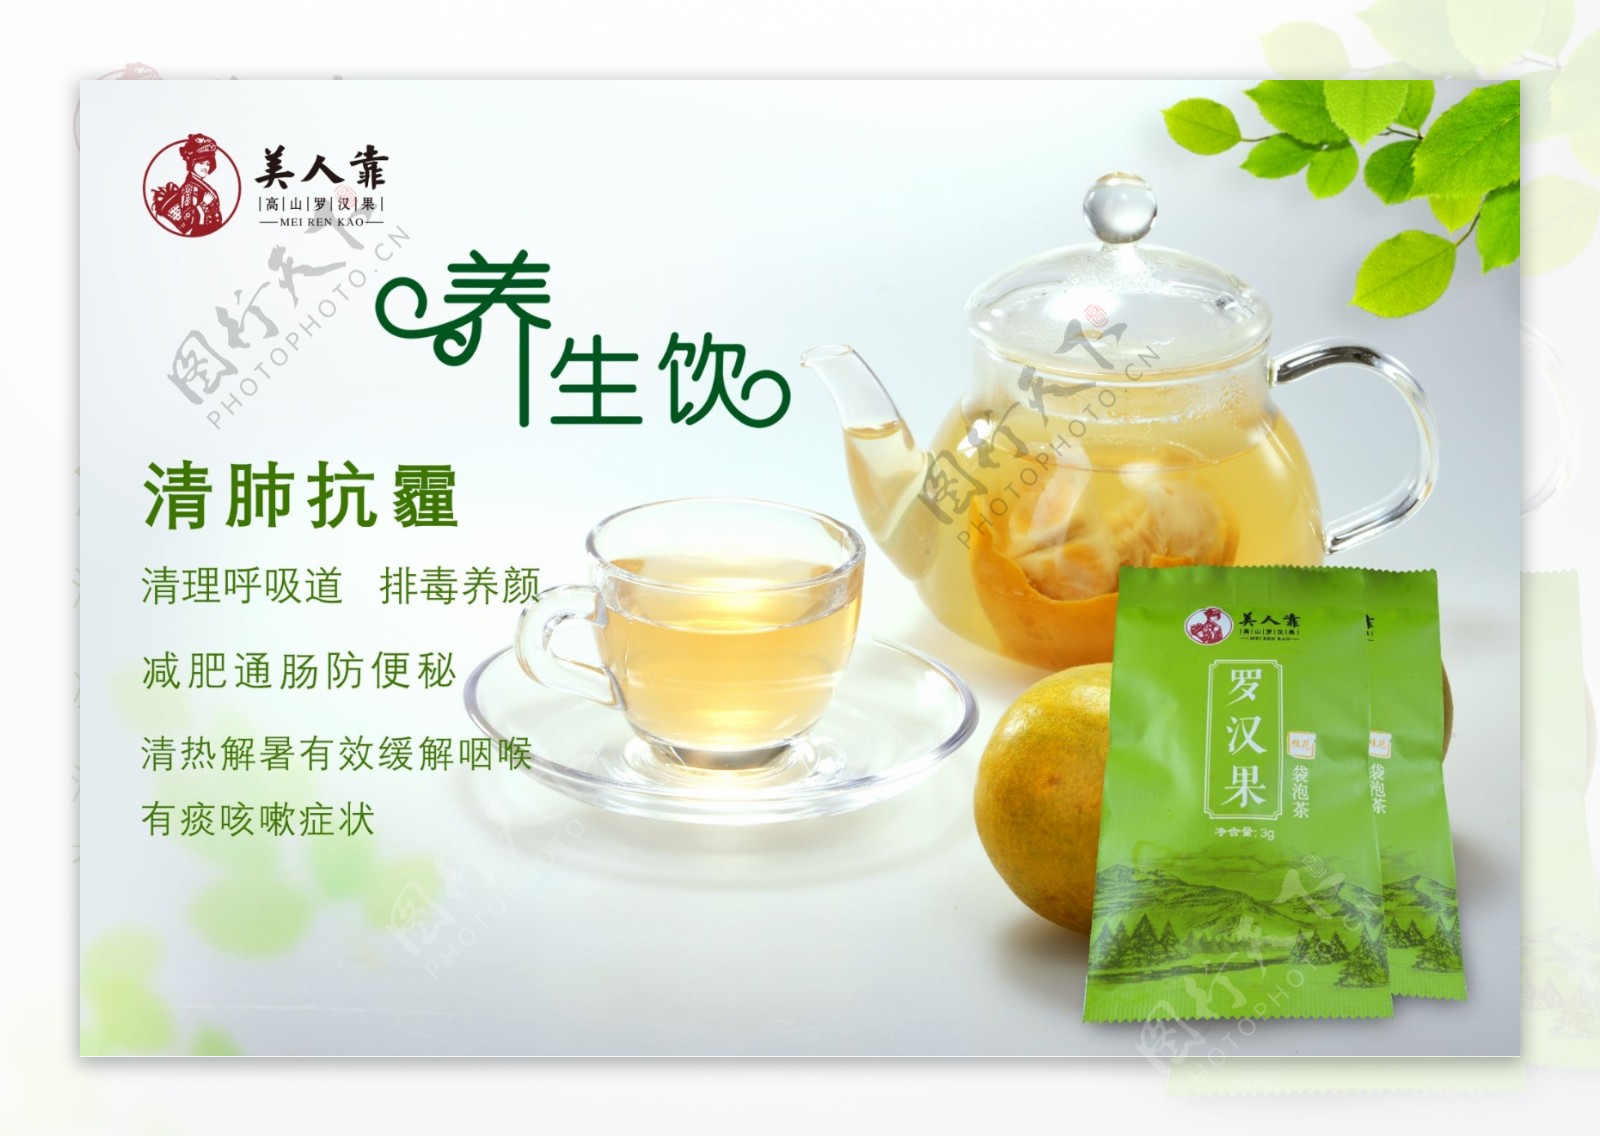 广告功效农产品罗汉果茶